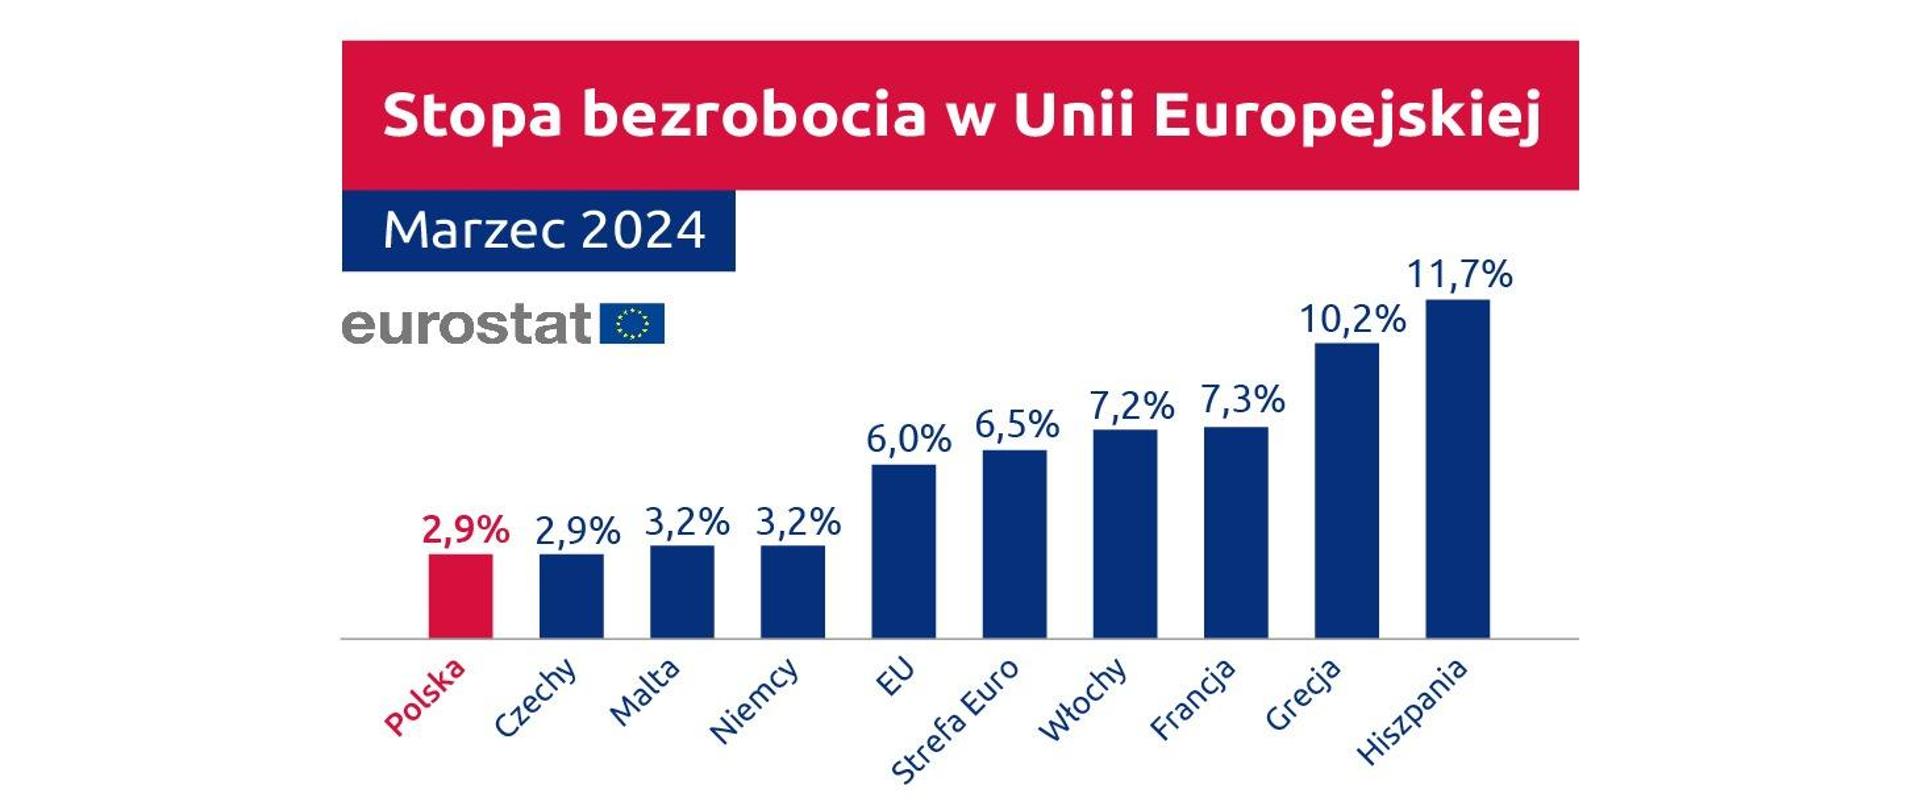 Eurostat: Polska z najniższym bezrobociem w Unii Europejskiej